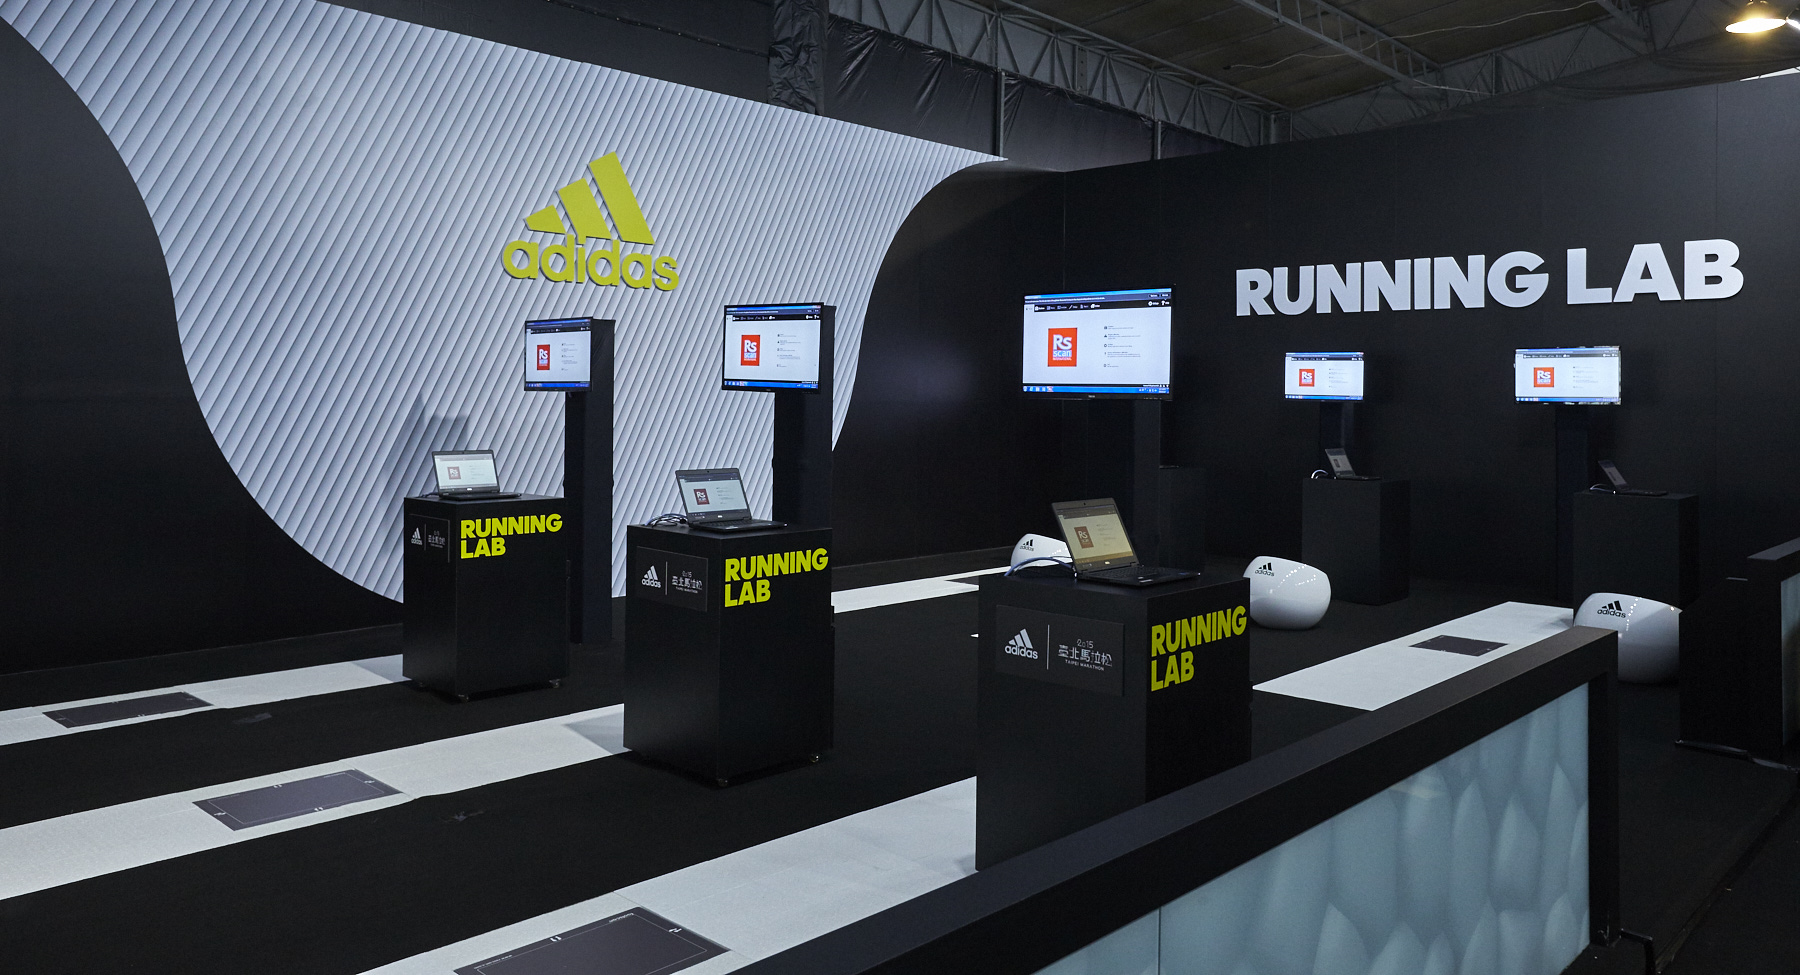 adidas running lab